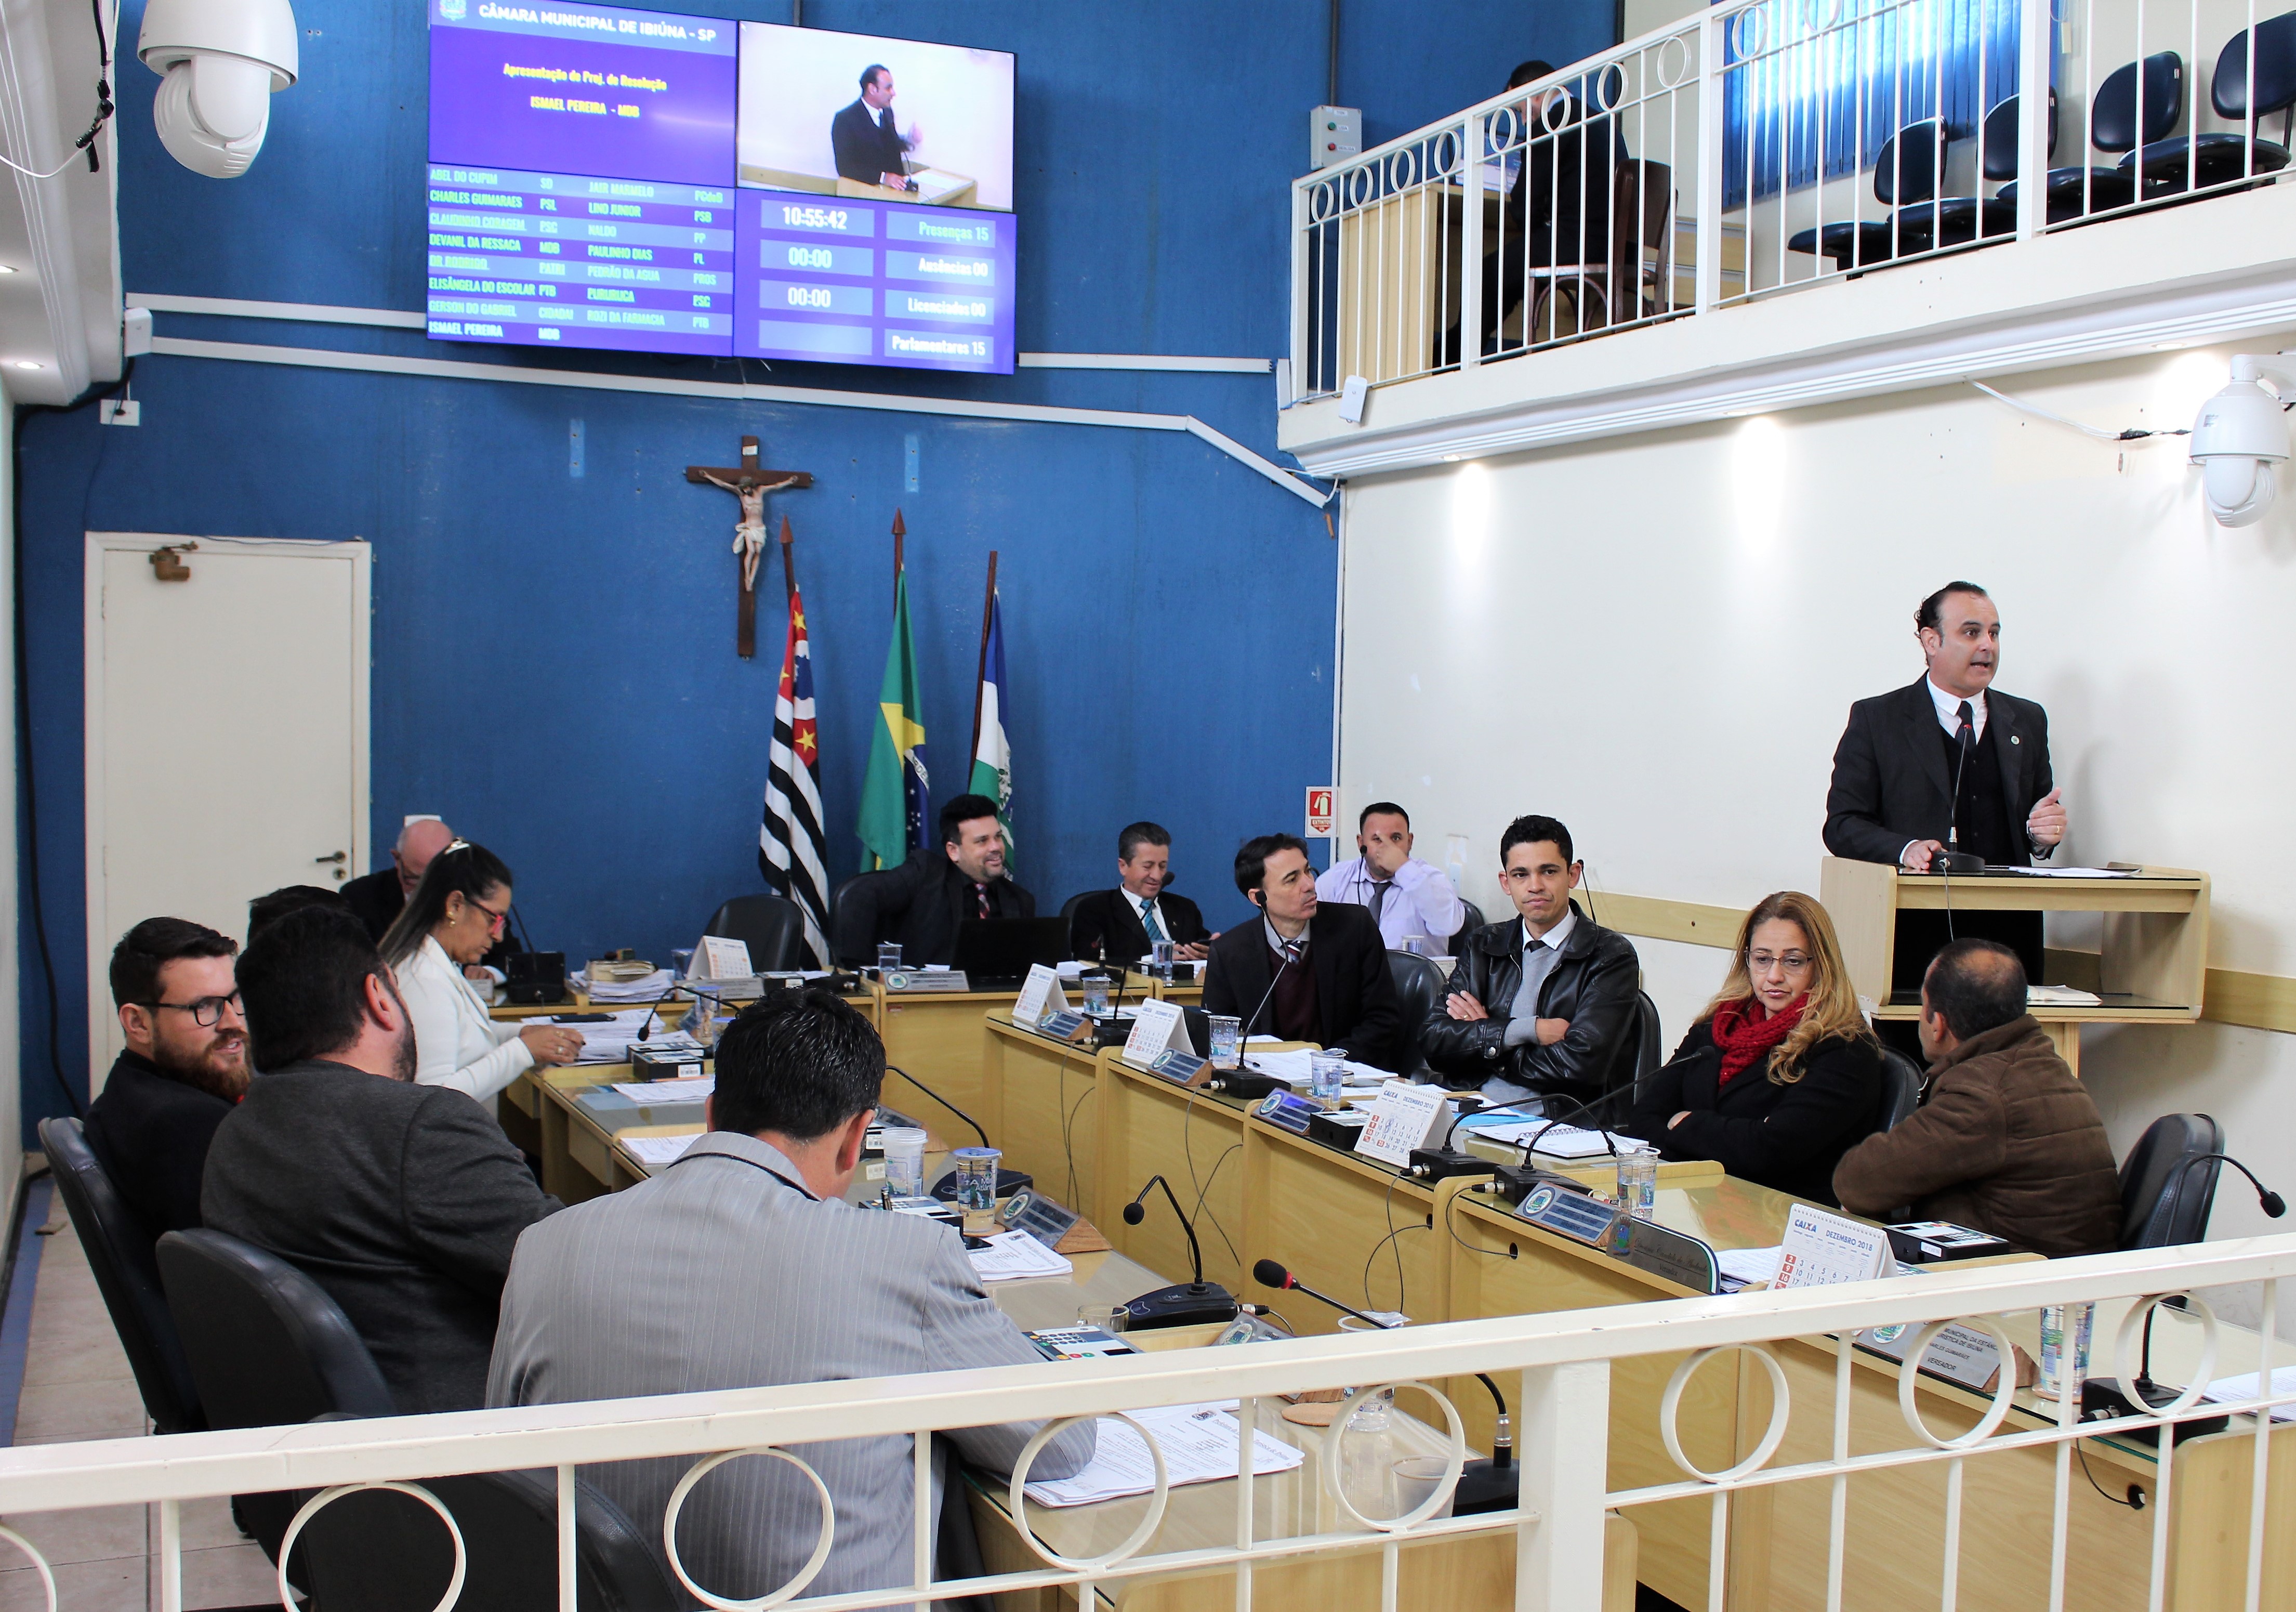 Segurança pública é debatida em sessão da Câmara Municipal de Ibiúna